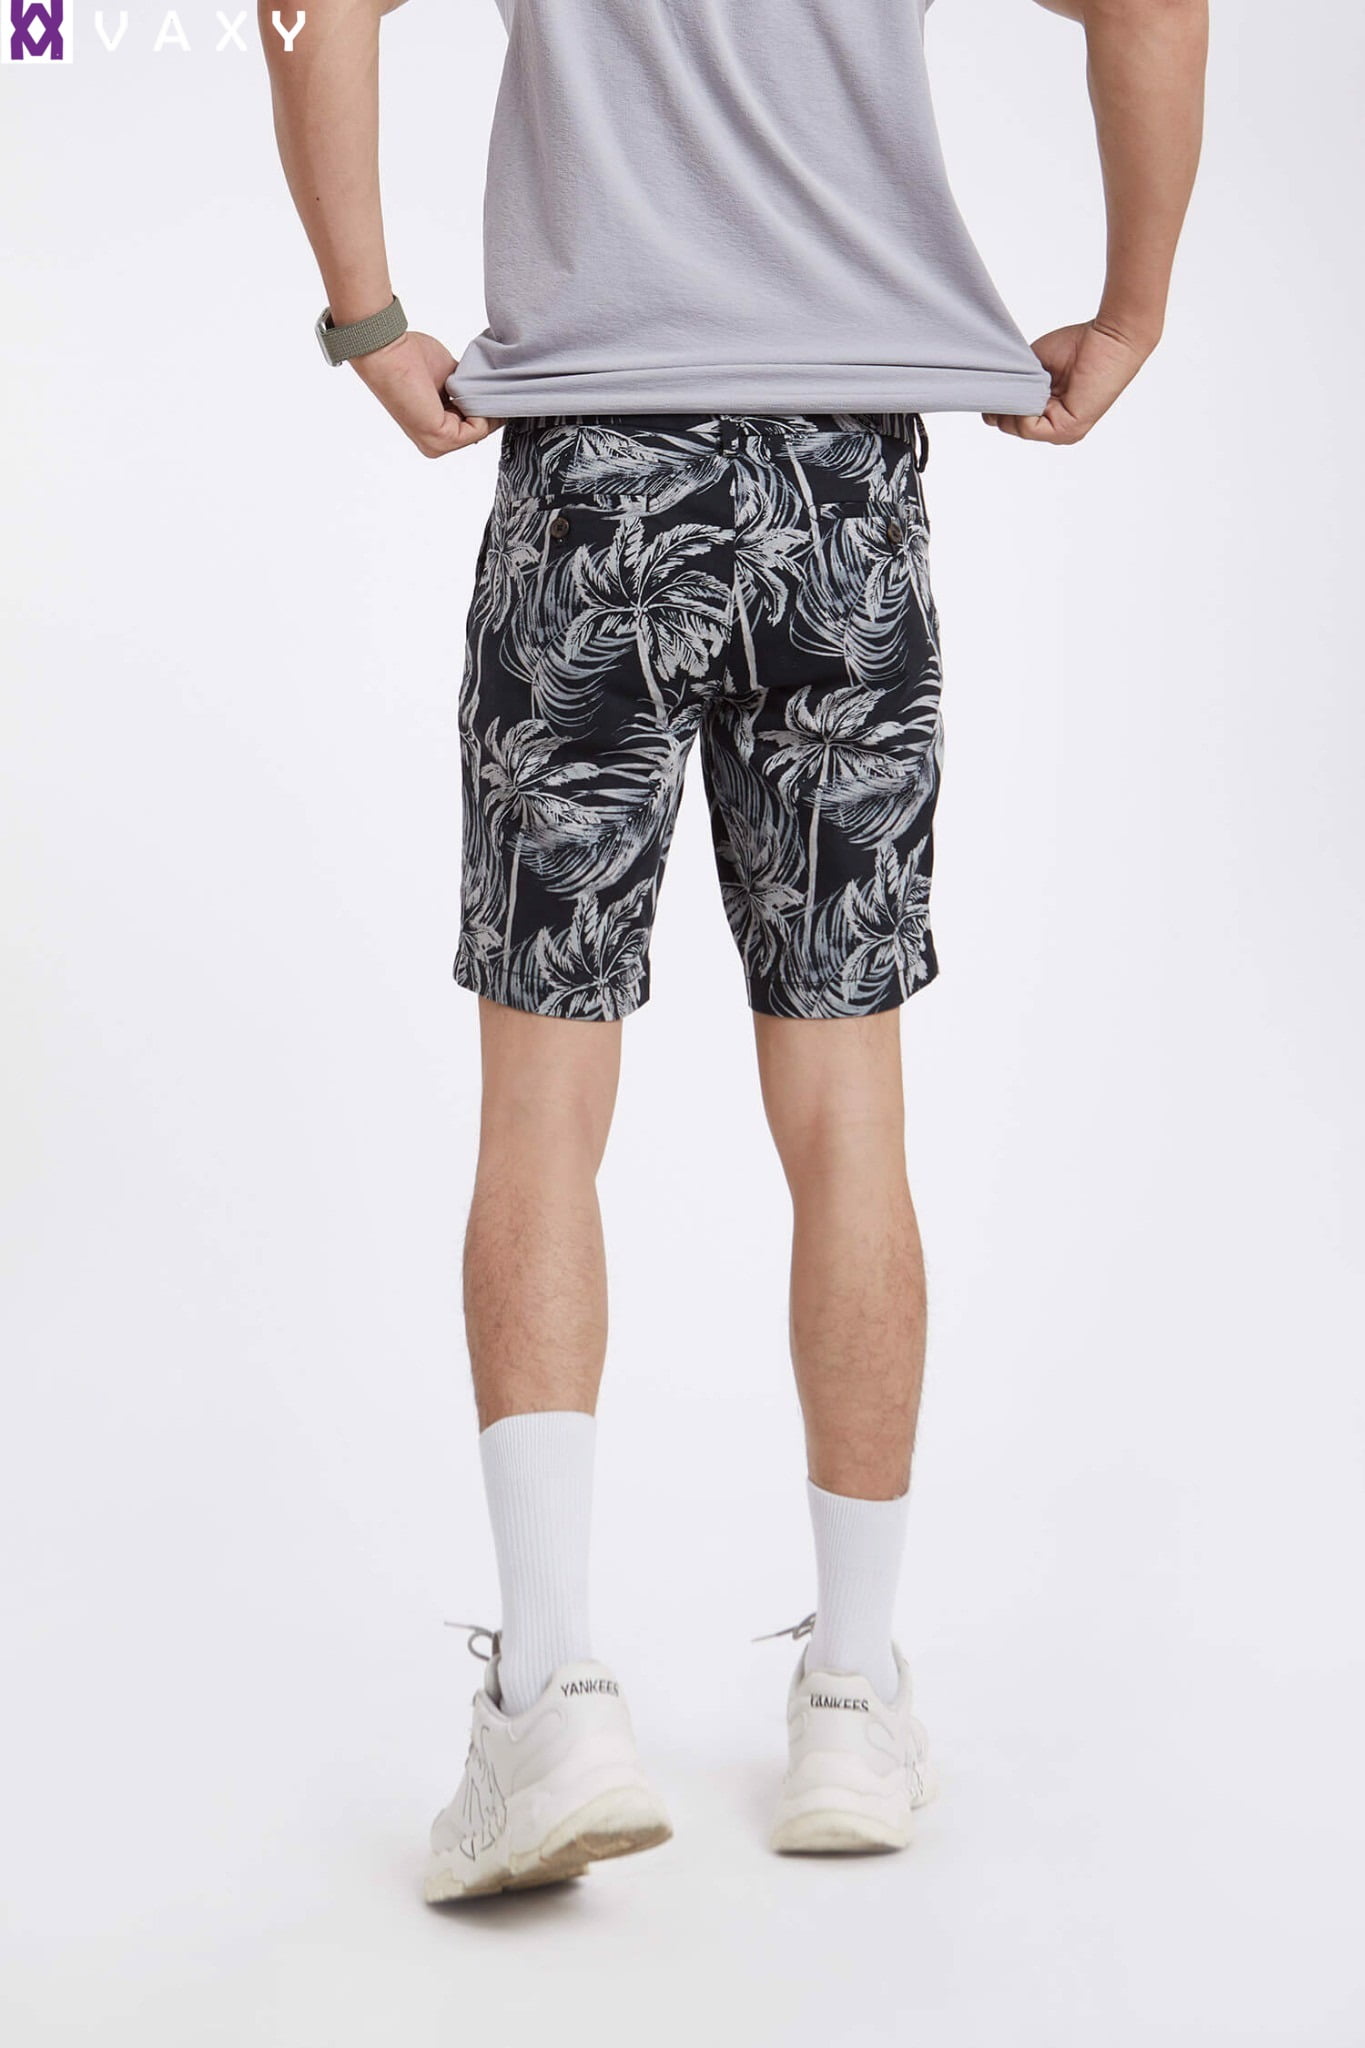 Nếu bạn đang tìm item đầy nổi loạn, quần short nam với họa tiết graphic là lựa chọn hoàn hảo.